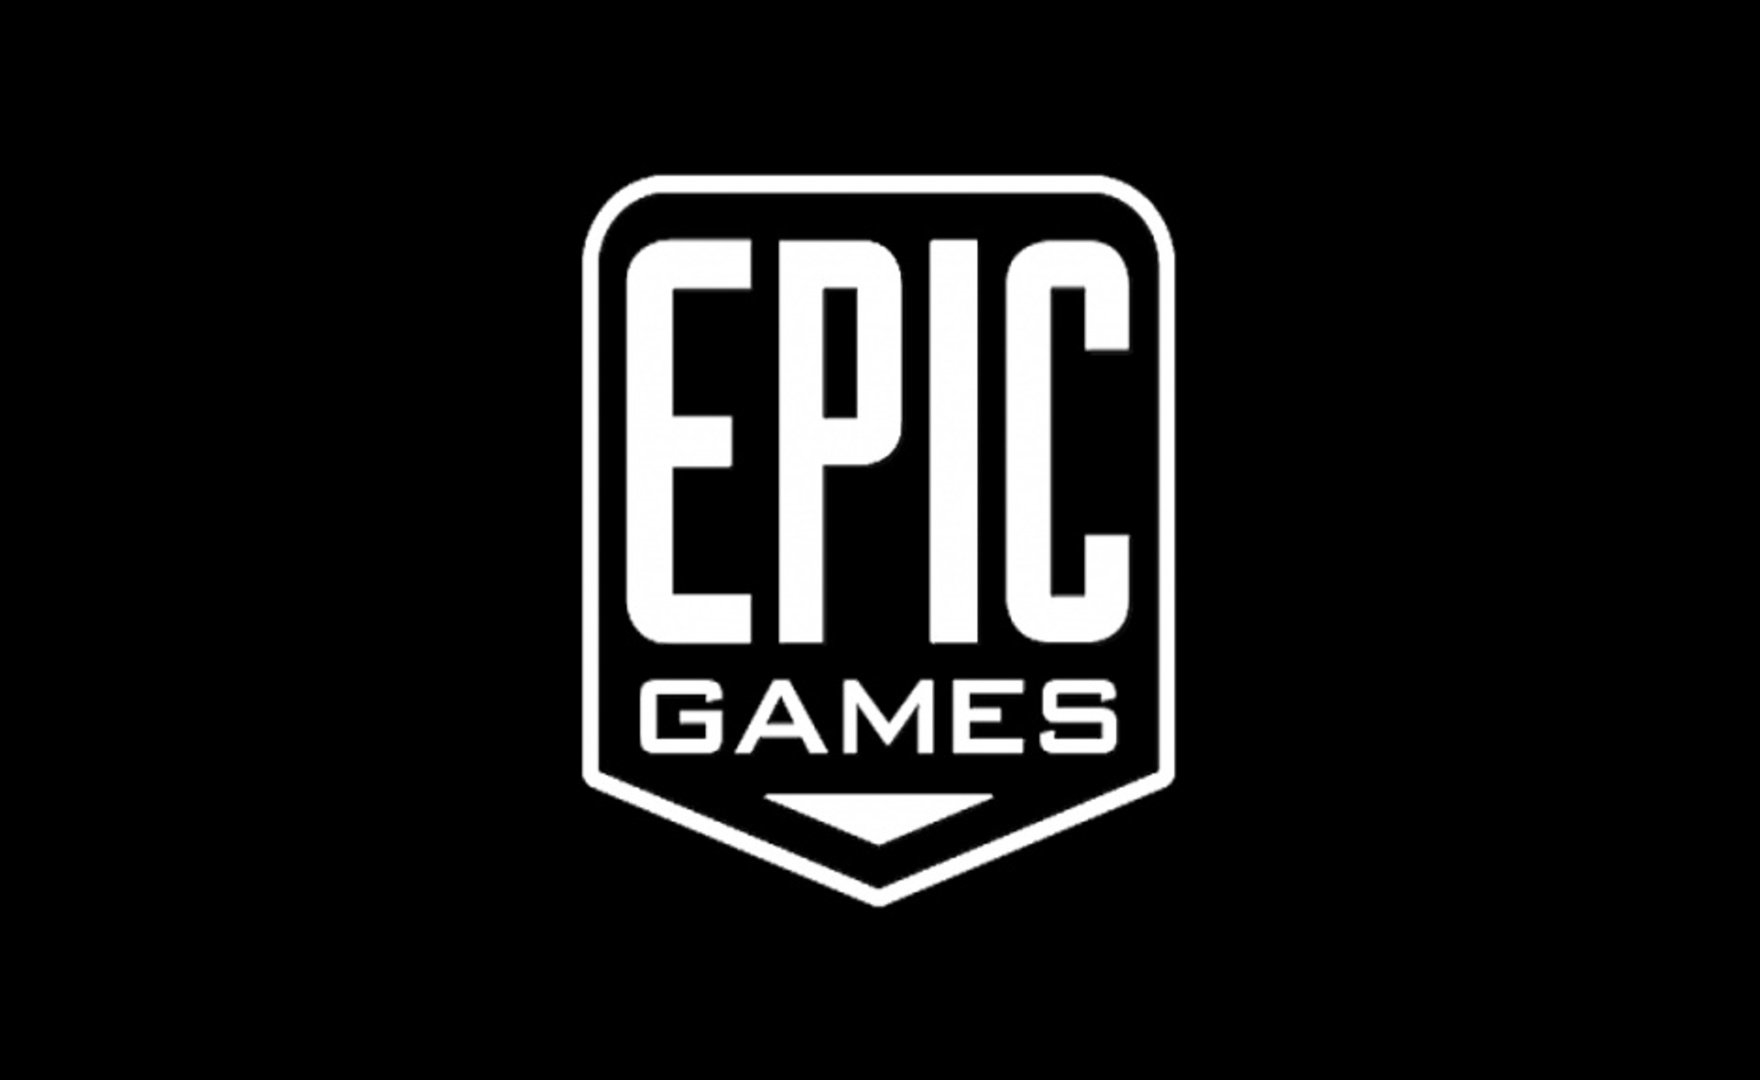 Epic Games compra Houseparty, app di videochat apprezzata dagli adolescenti